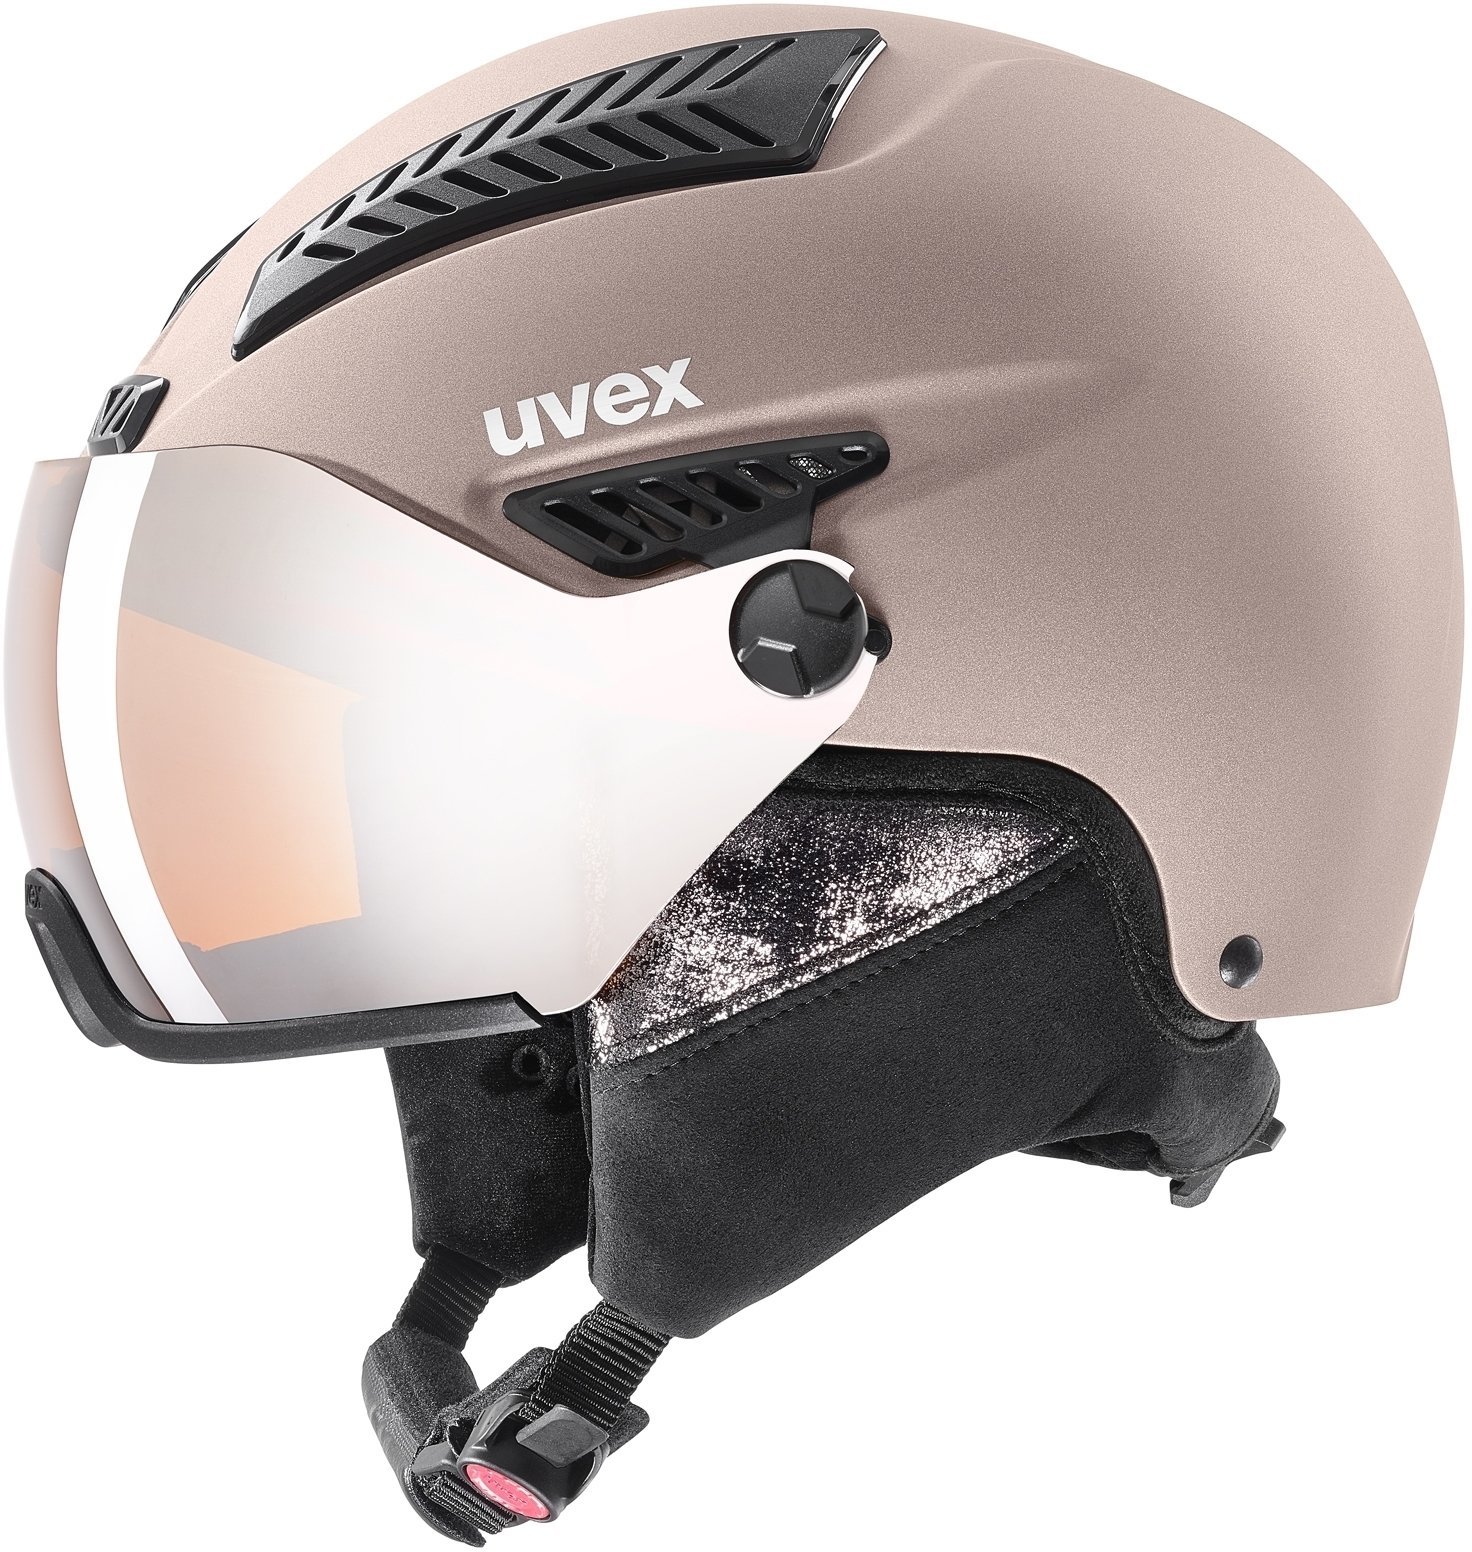 Ski Helmet UVEX Hlmt 600 Visor Rose Mat 55-57 cm Ski Helmet